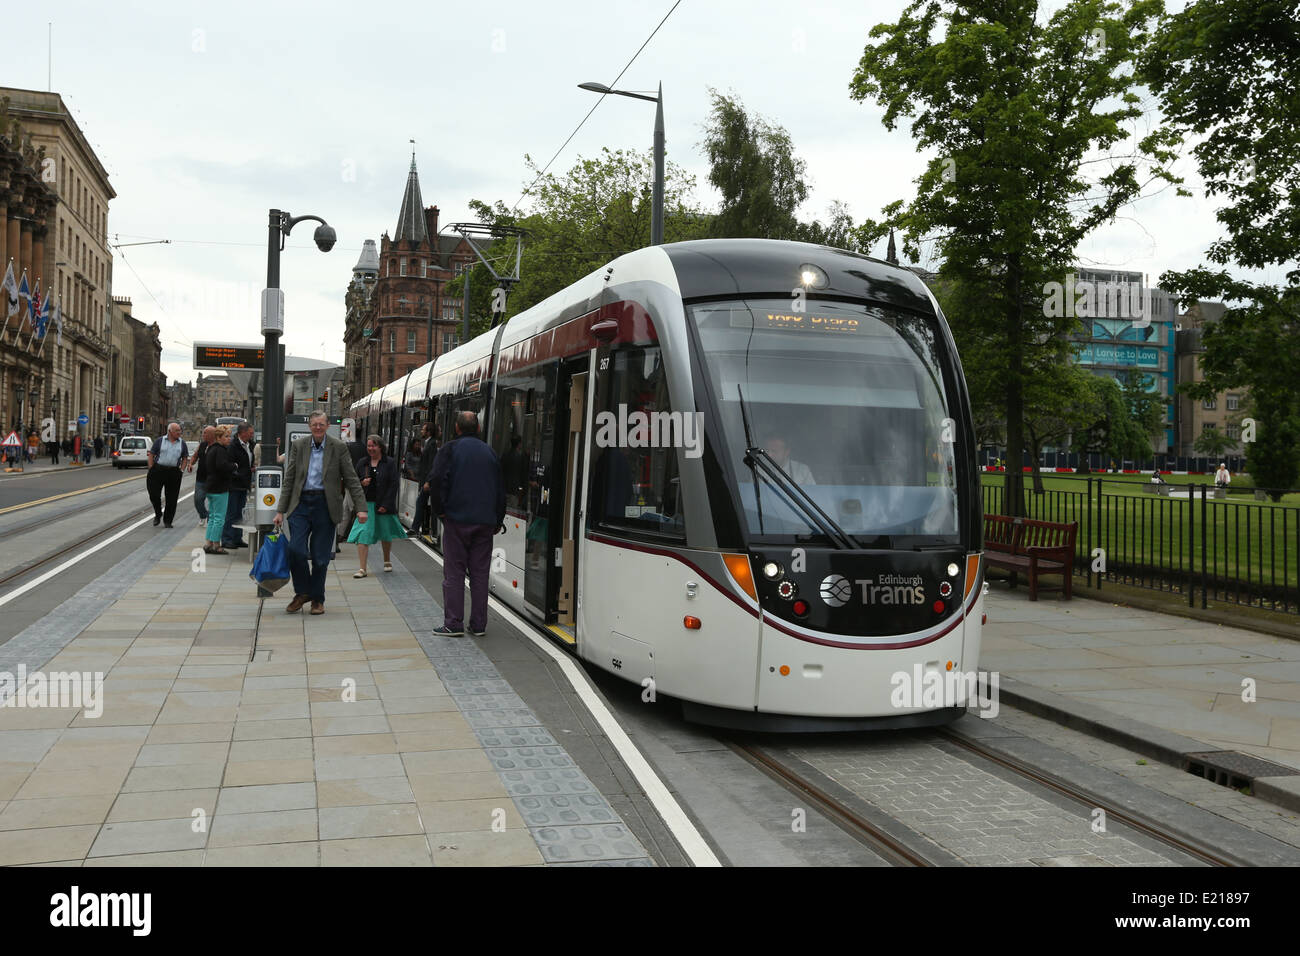 Image de la nouvelle opération en service les tramways d'Édimbourg à l'arrêt dans une rue de la ville d'Edinburgh, Ecosse, Royaume-Uni. Banque D'Images